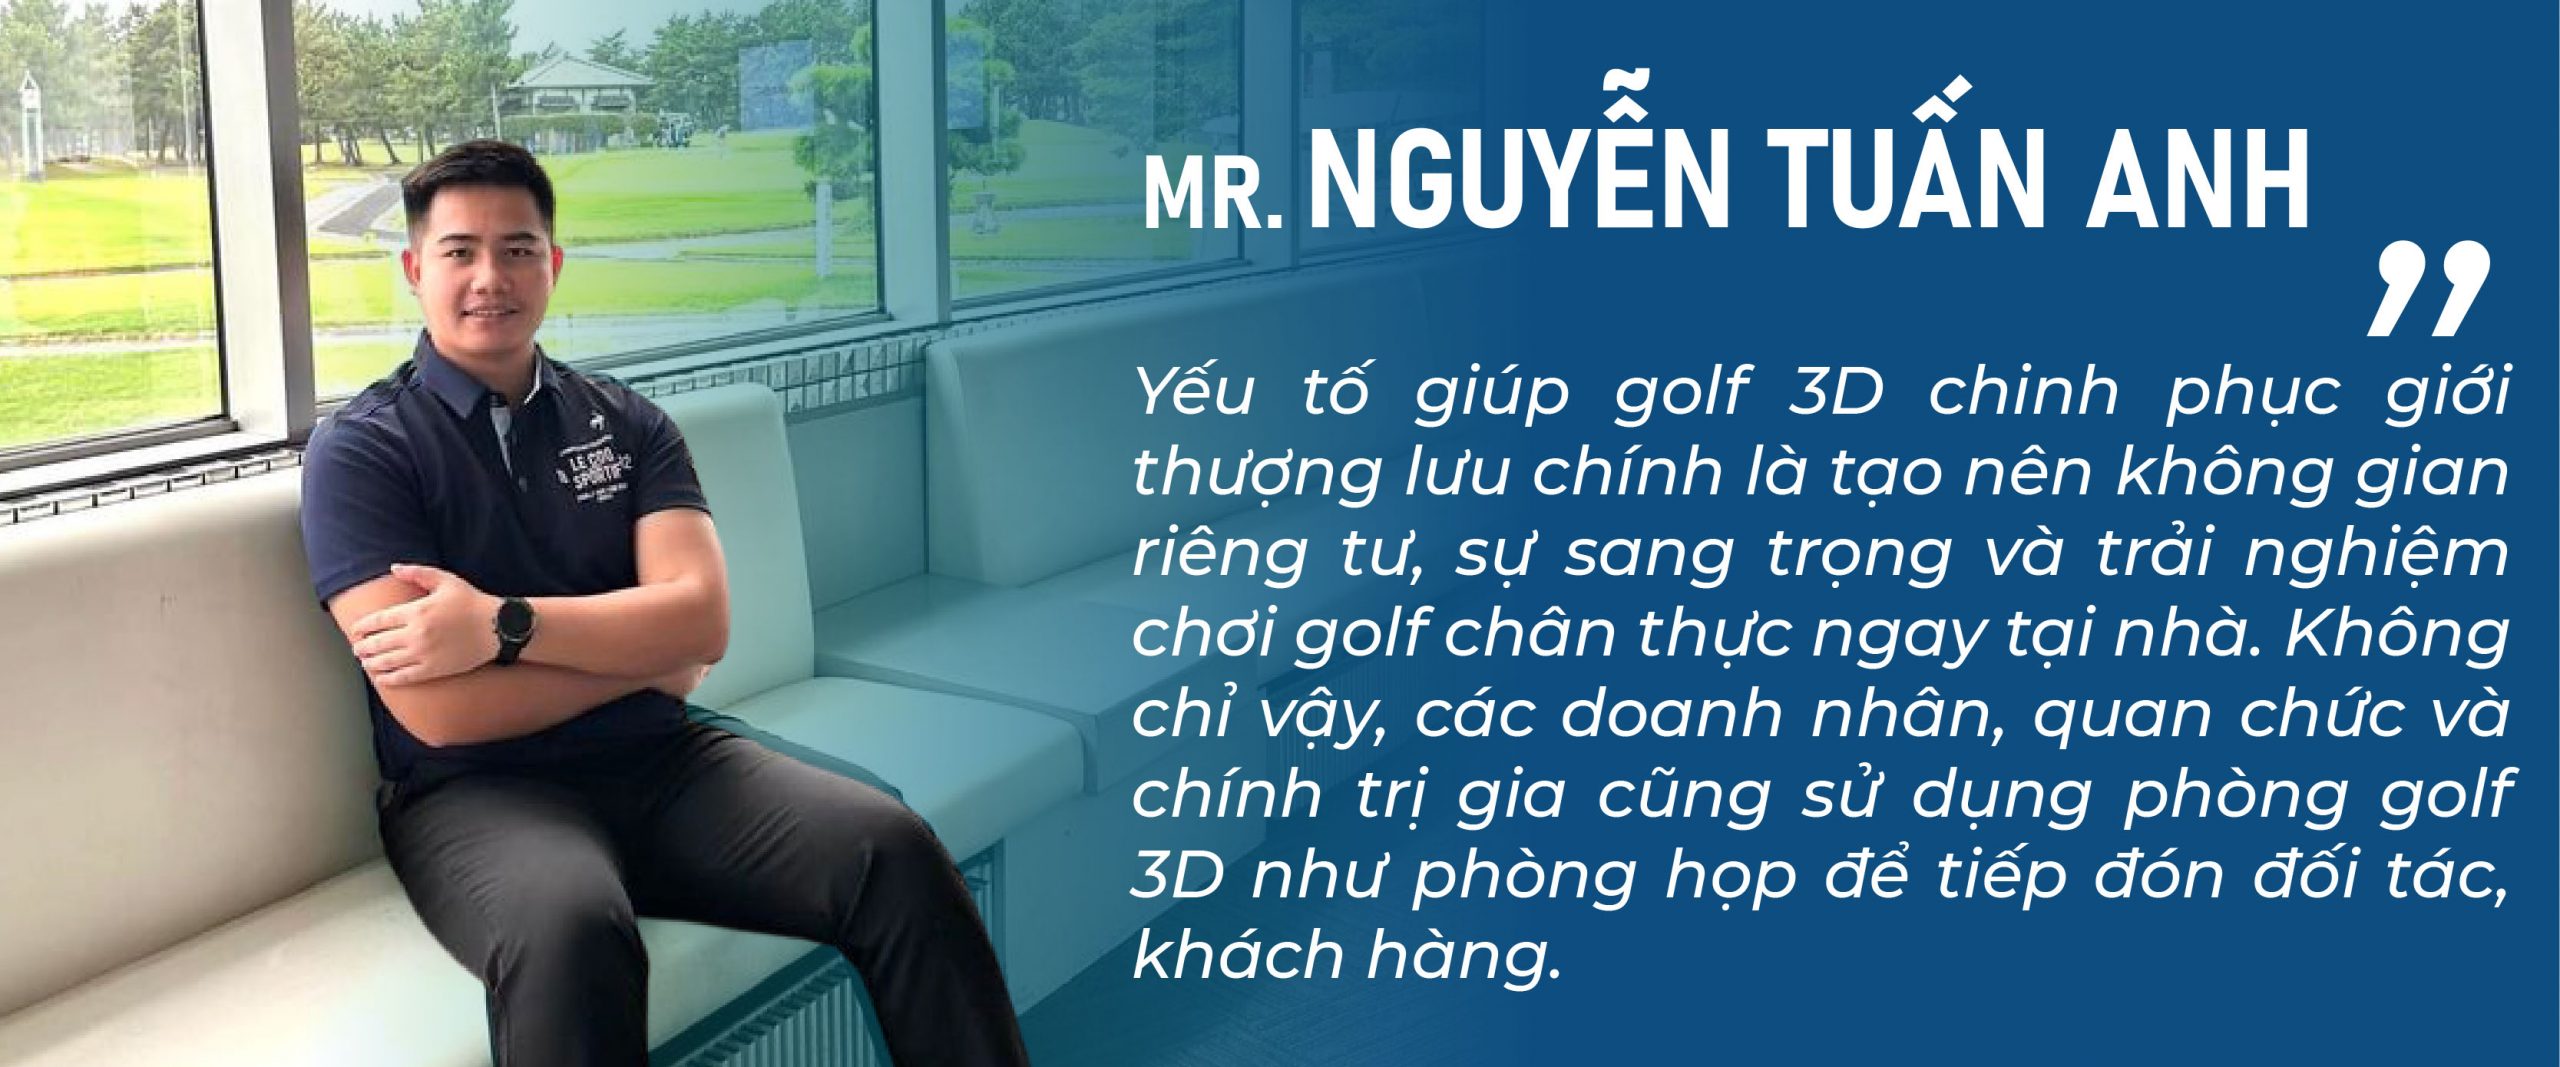 CEO Nguyễn Tuấn Anh chia sẻ về yếu tố giúp golf 3D chinh phục giới thượng lưu